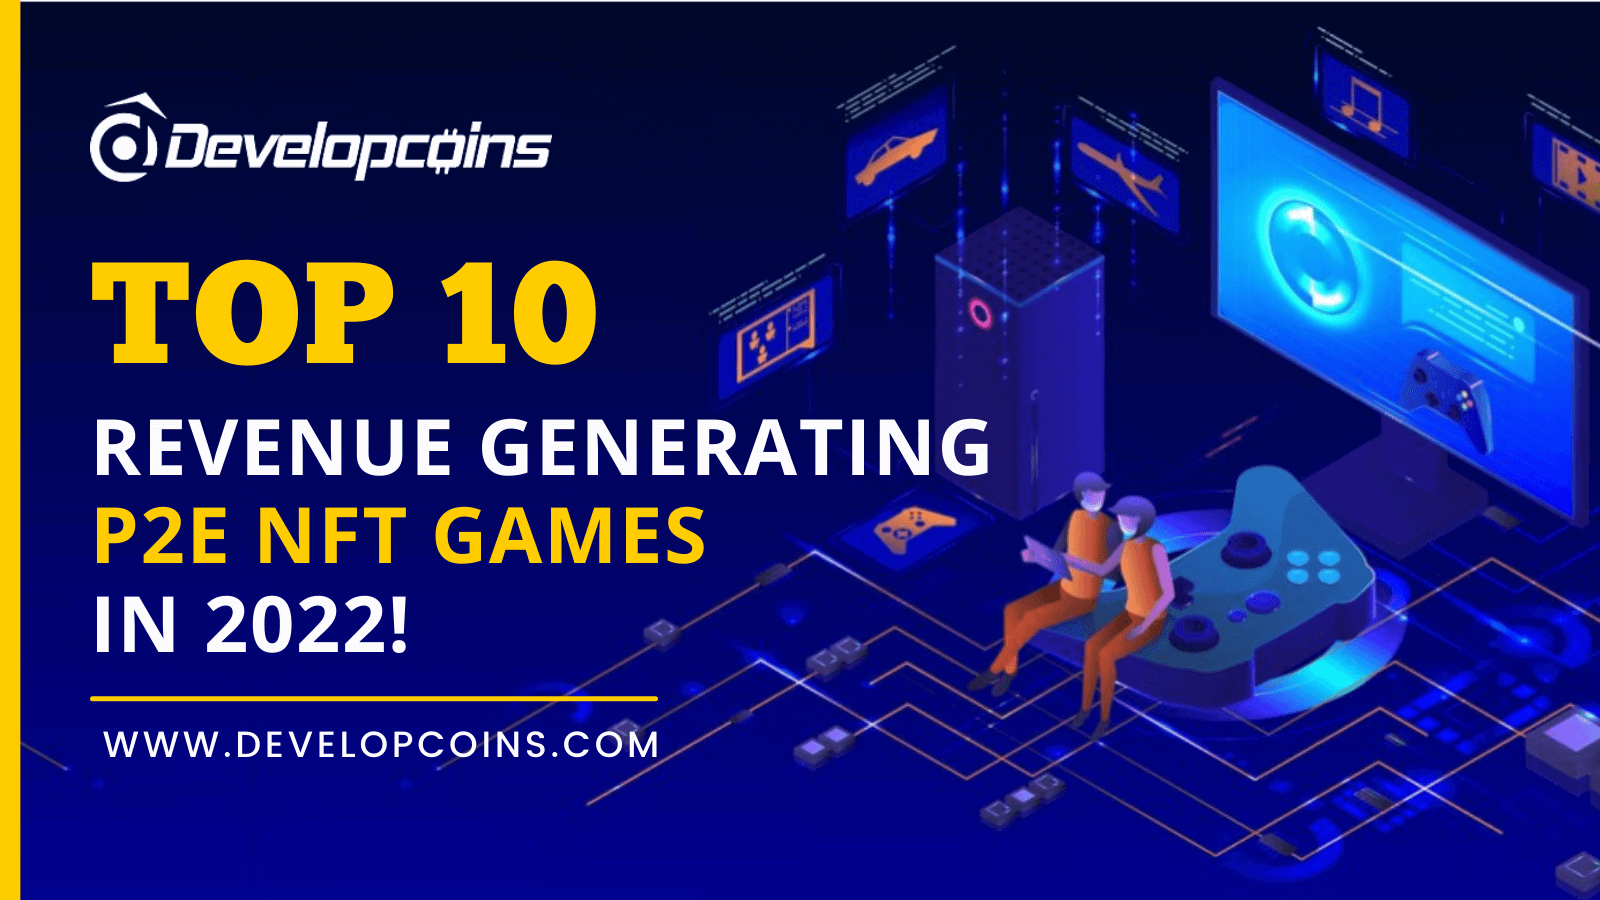 TOP 10 Revenue Generating P2E NFT Games in 2022!